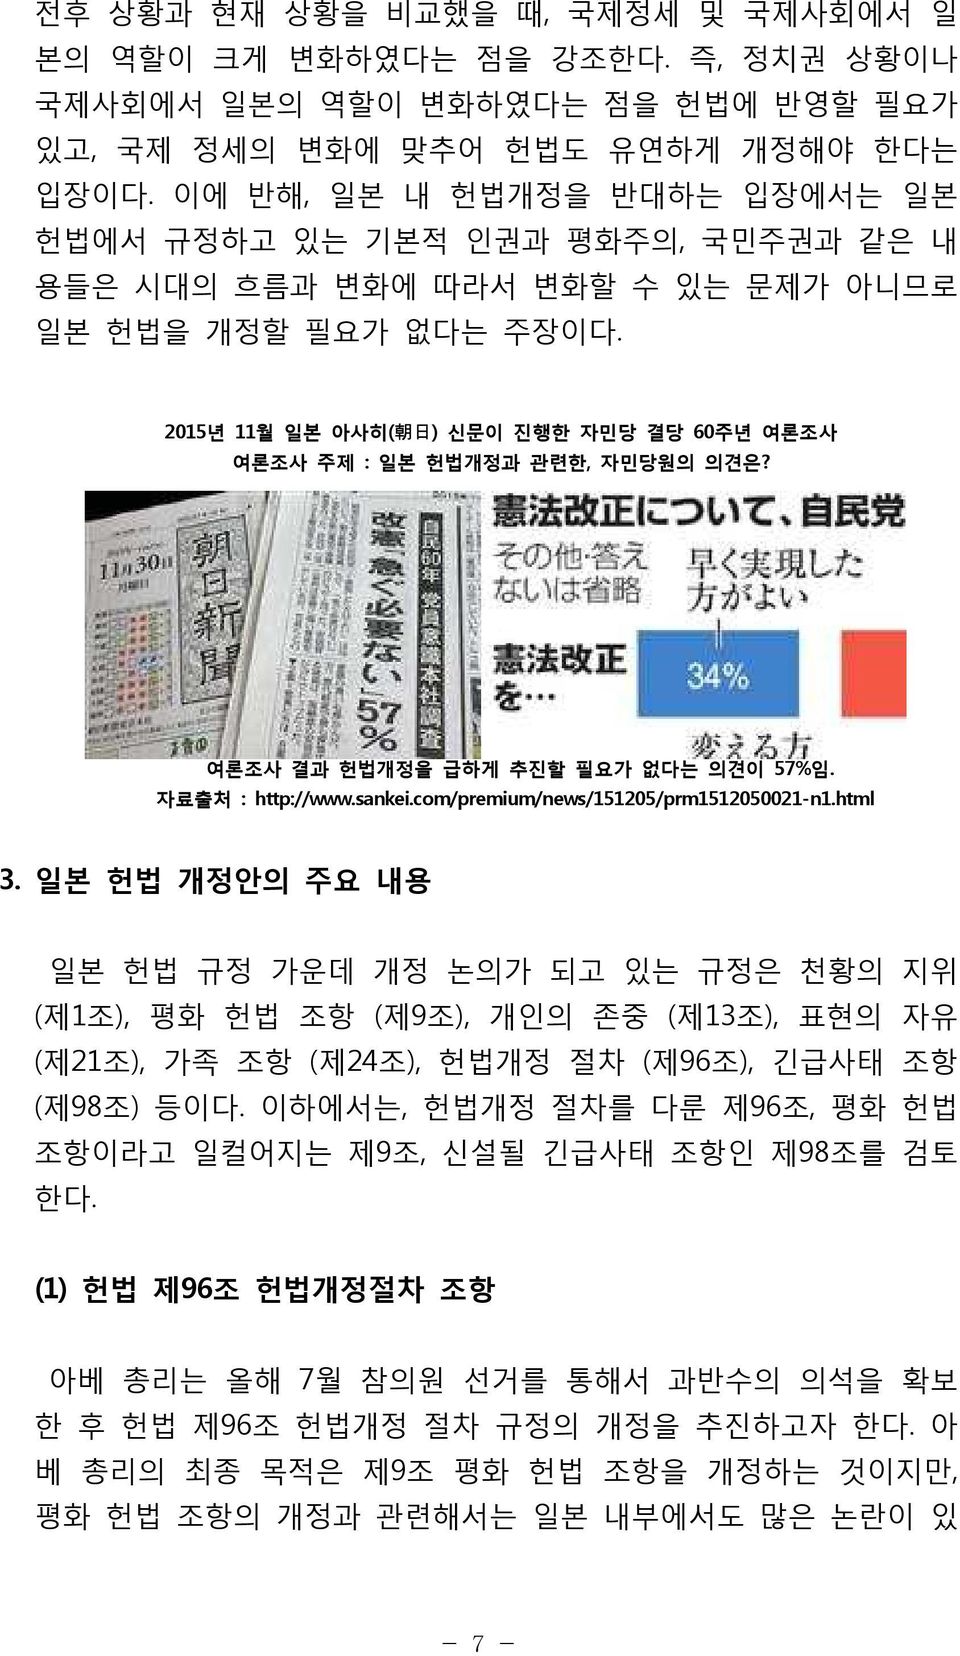 2015년 11월 일본 아사히( 朝 日 ) 신문이 진행한 자민당 결당 60주년 여론조사 여론조사 주제 : 일본 헌법개정과 관련한, 자민당원의 의견은? 여론조사 결과 헌법개정을 급하게 추진할 필요가 없다는 의견이 57%임. 자료출처 : http://www.sankei.com/premium/news/151205/prm1512050021-n1.html 3.